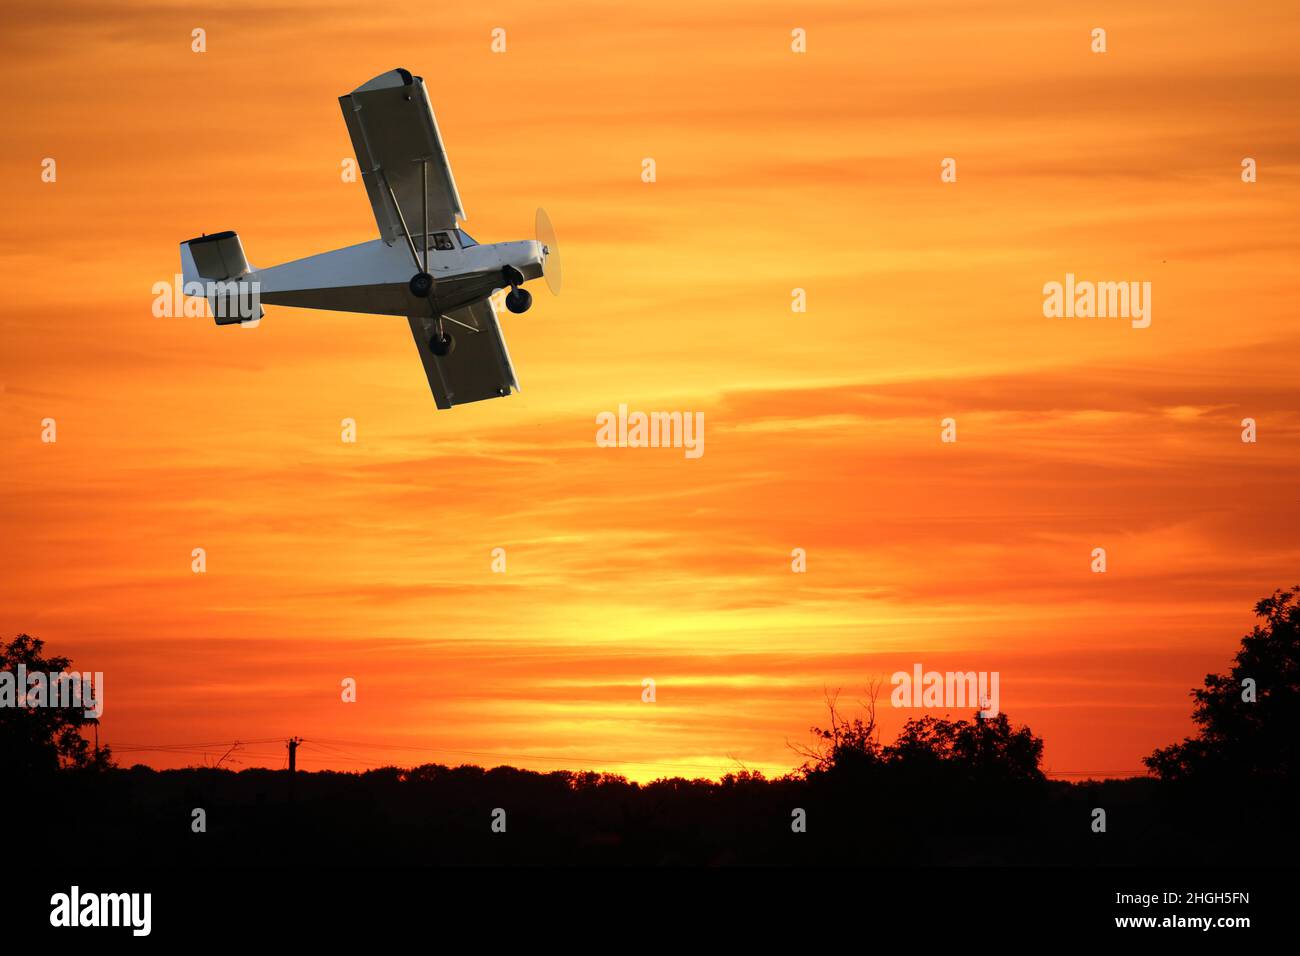 Petit avion privé à hélice unique contre le ciel dramatique - manipulation numérique. Banque D'Images